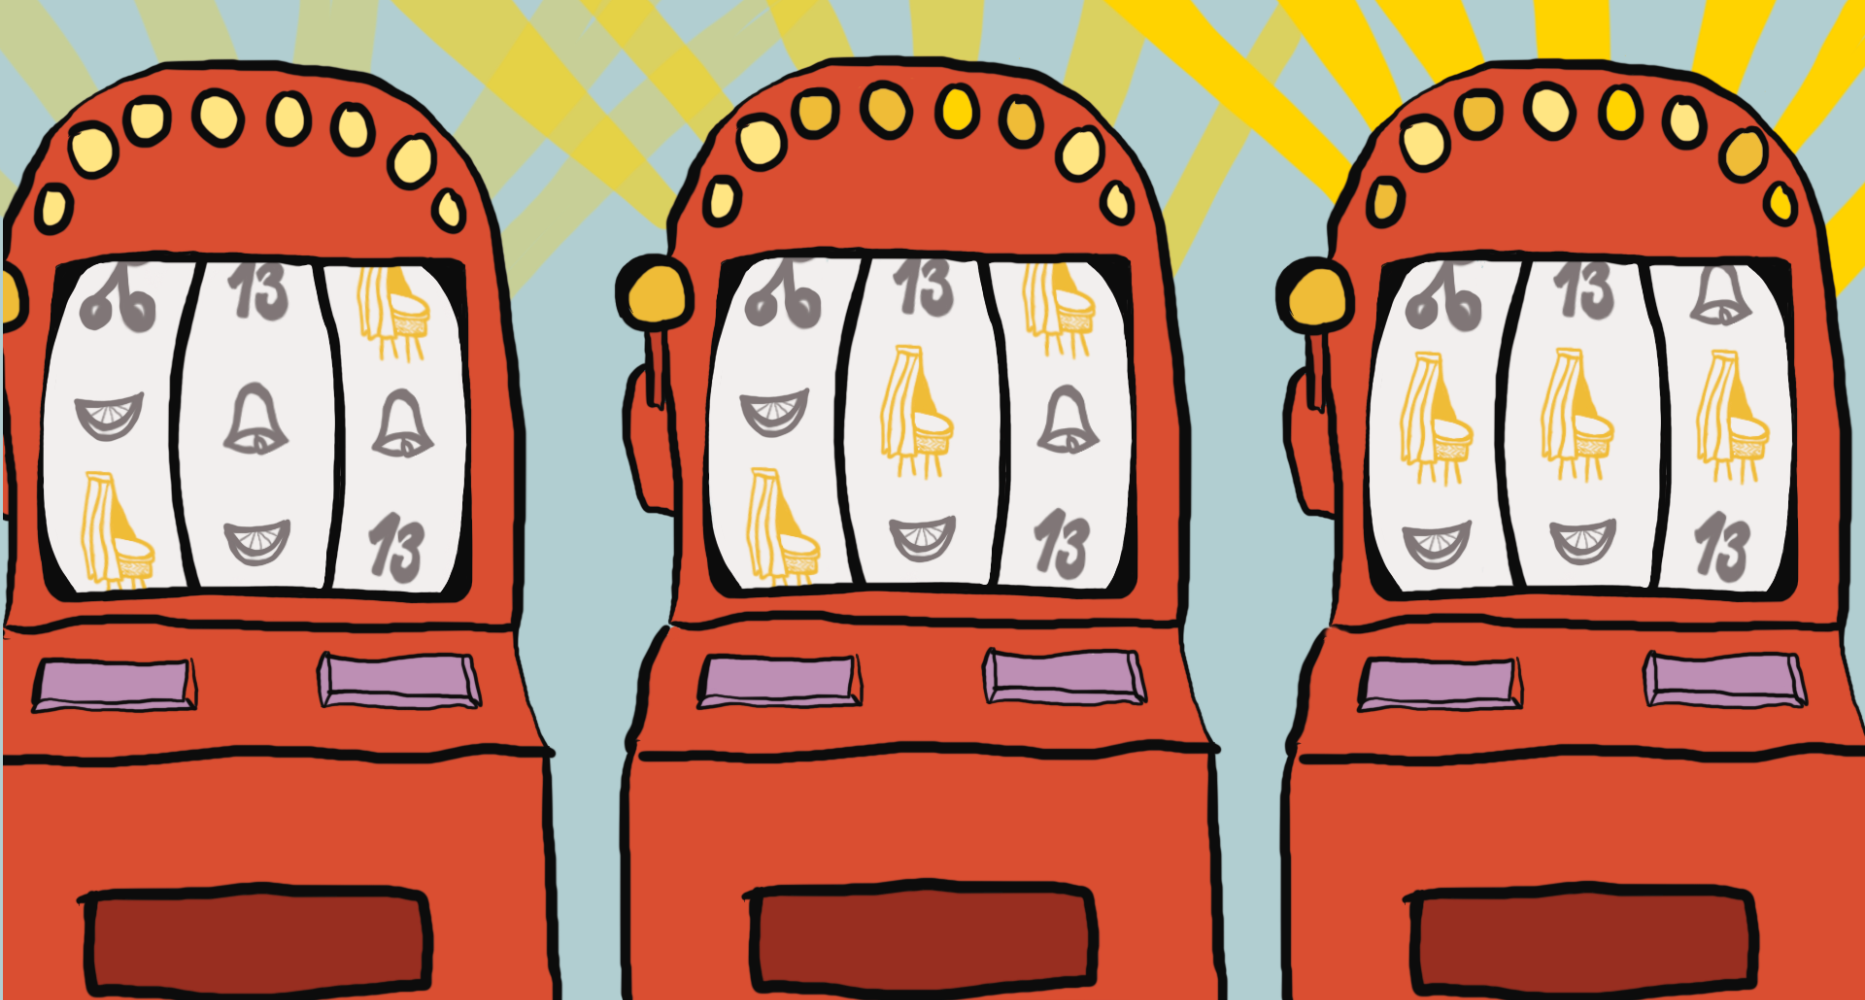 illustratie van gokkasten met drie keer op rij een gouden wieg